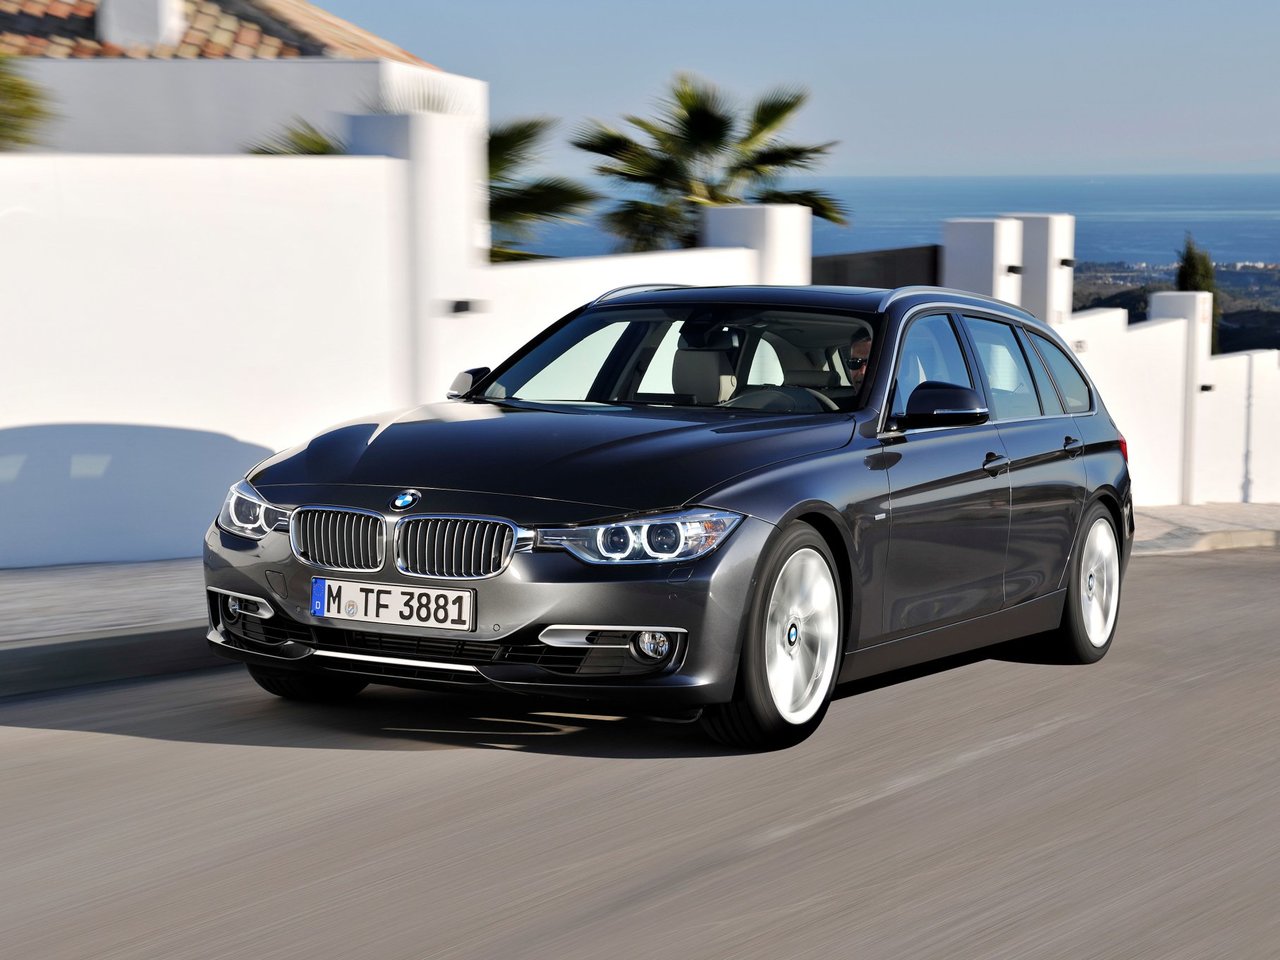 BMW 3 Серии, 2011 - 2016, VI (F3x), универсал 5 дв.: купить, технические характеристики, отзывы и объявления